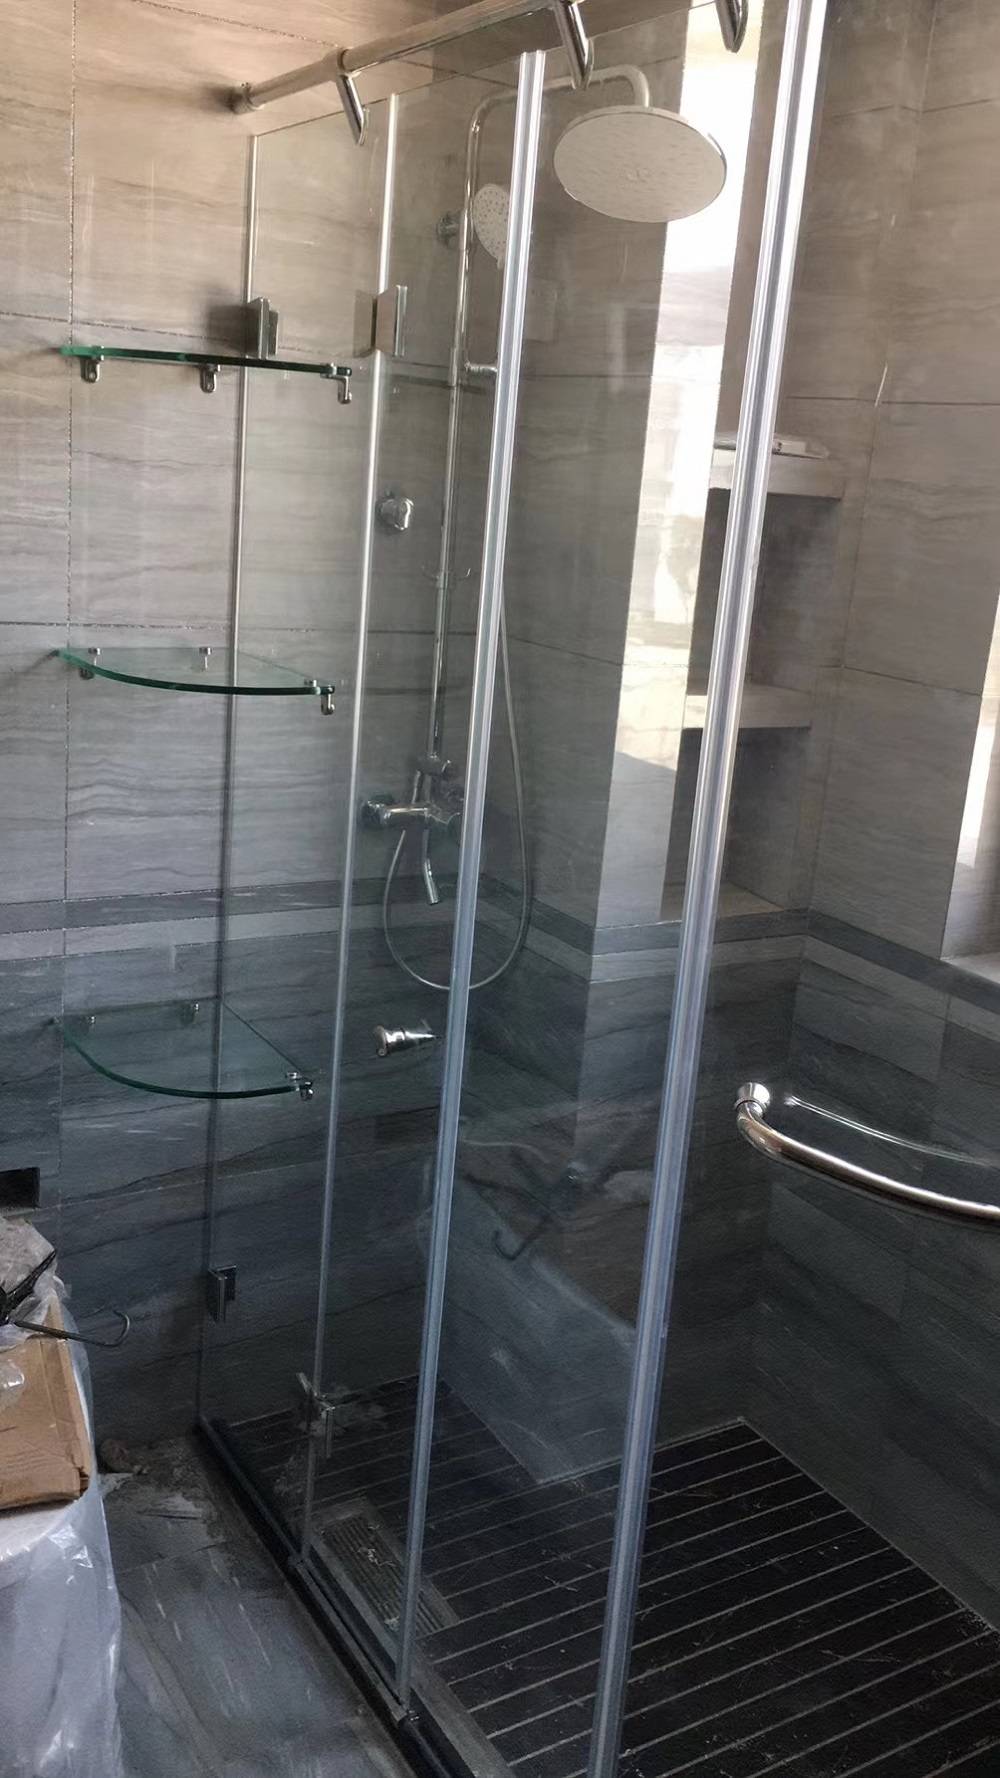 德立淋浴房：专业设计，让家居生活中多一份舒适和惬意